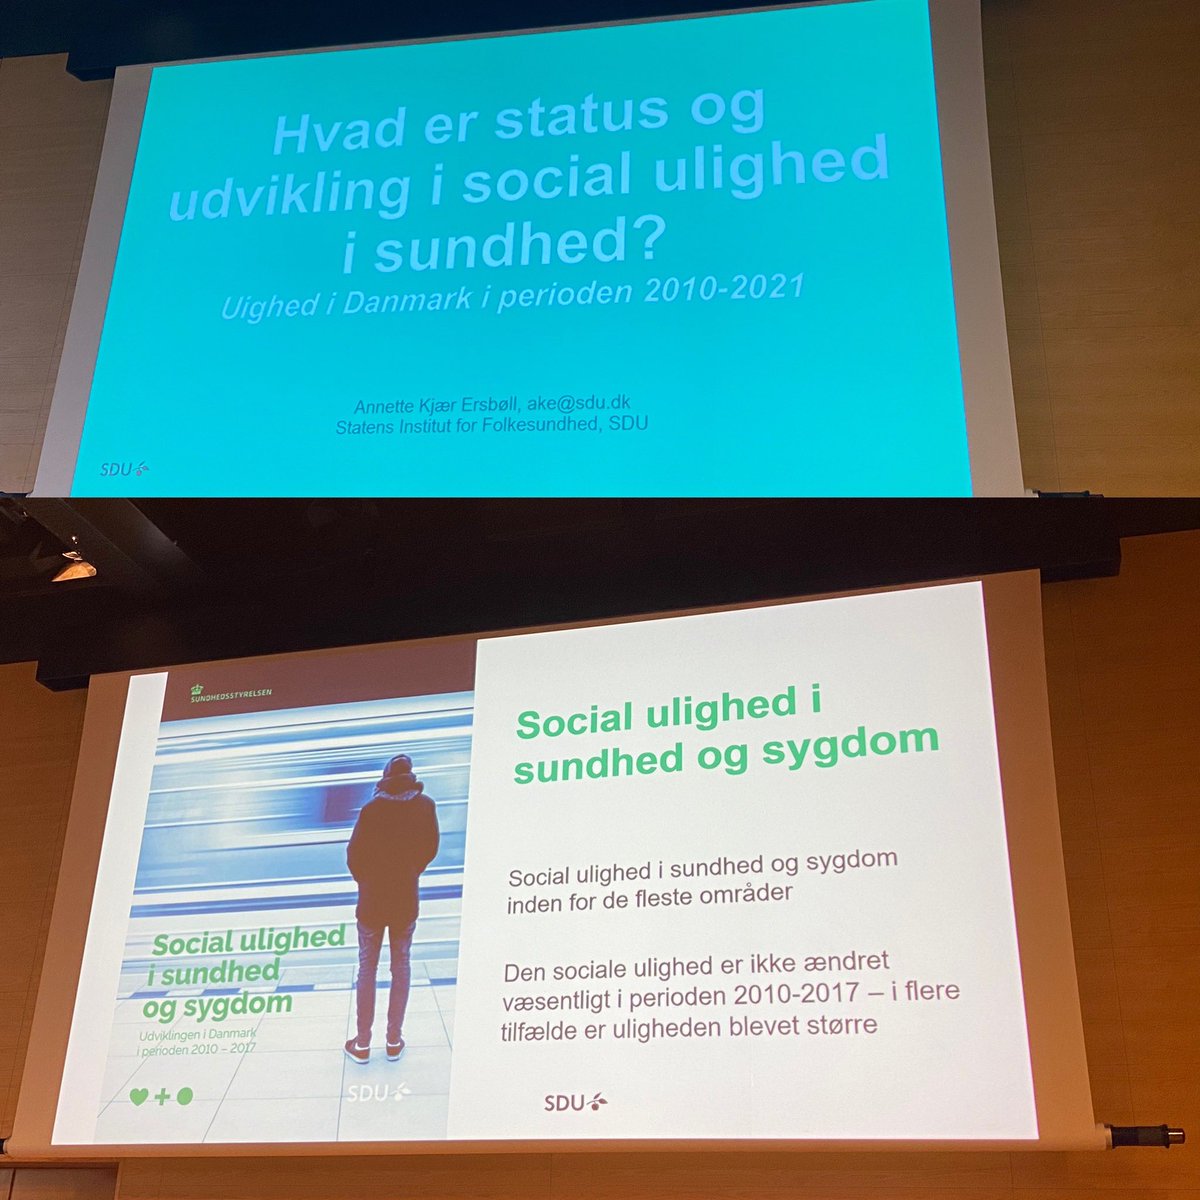 Mange steder at sætte ind - ulighed i sundhed har ikke oplevet forbedring fra 2010-2021 forklarer Annette Ersbøll, SIF #sundpol #sundhedsprofilen #sundhedforalle